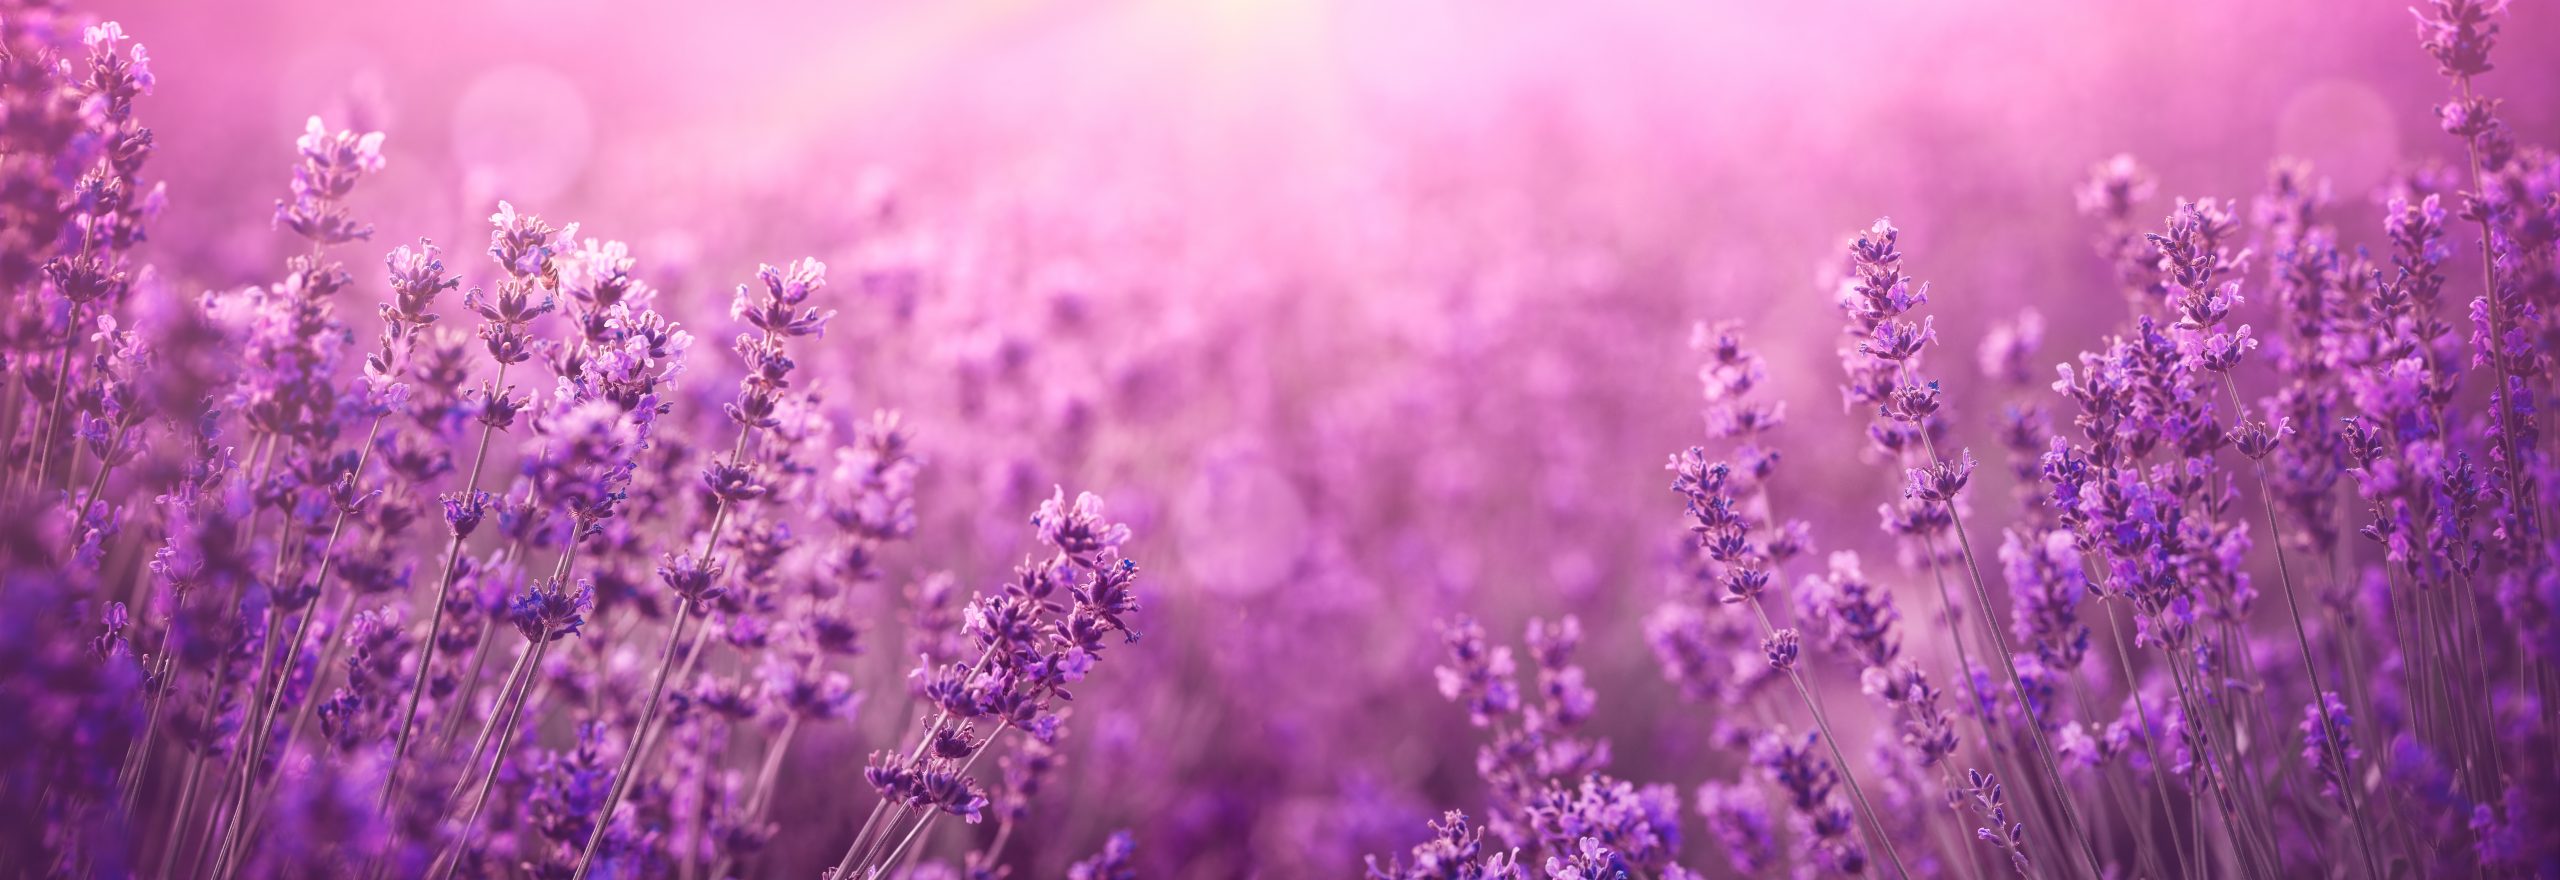 violet lavender field at sunset